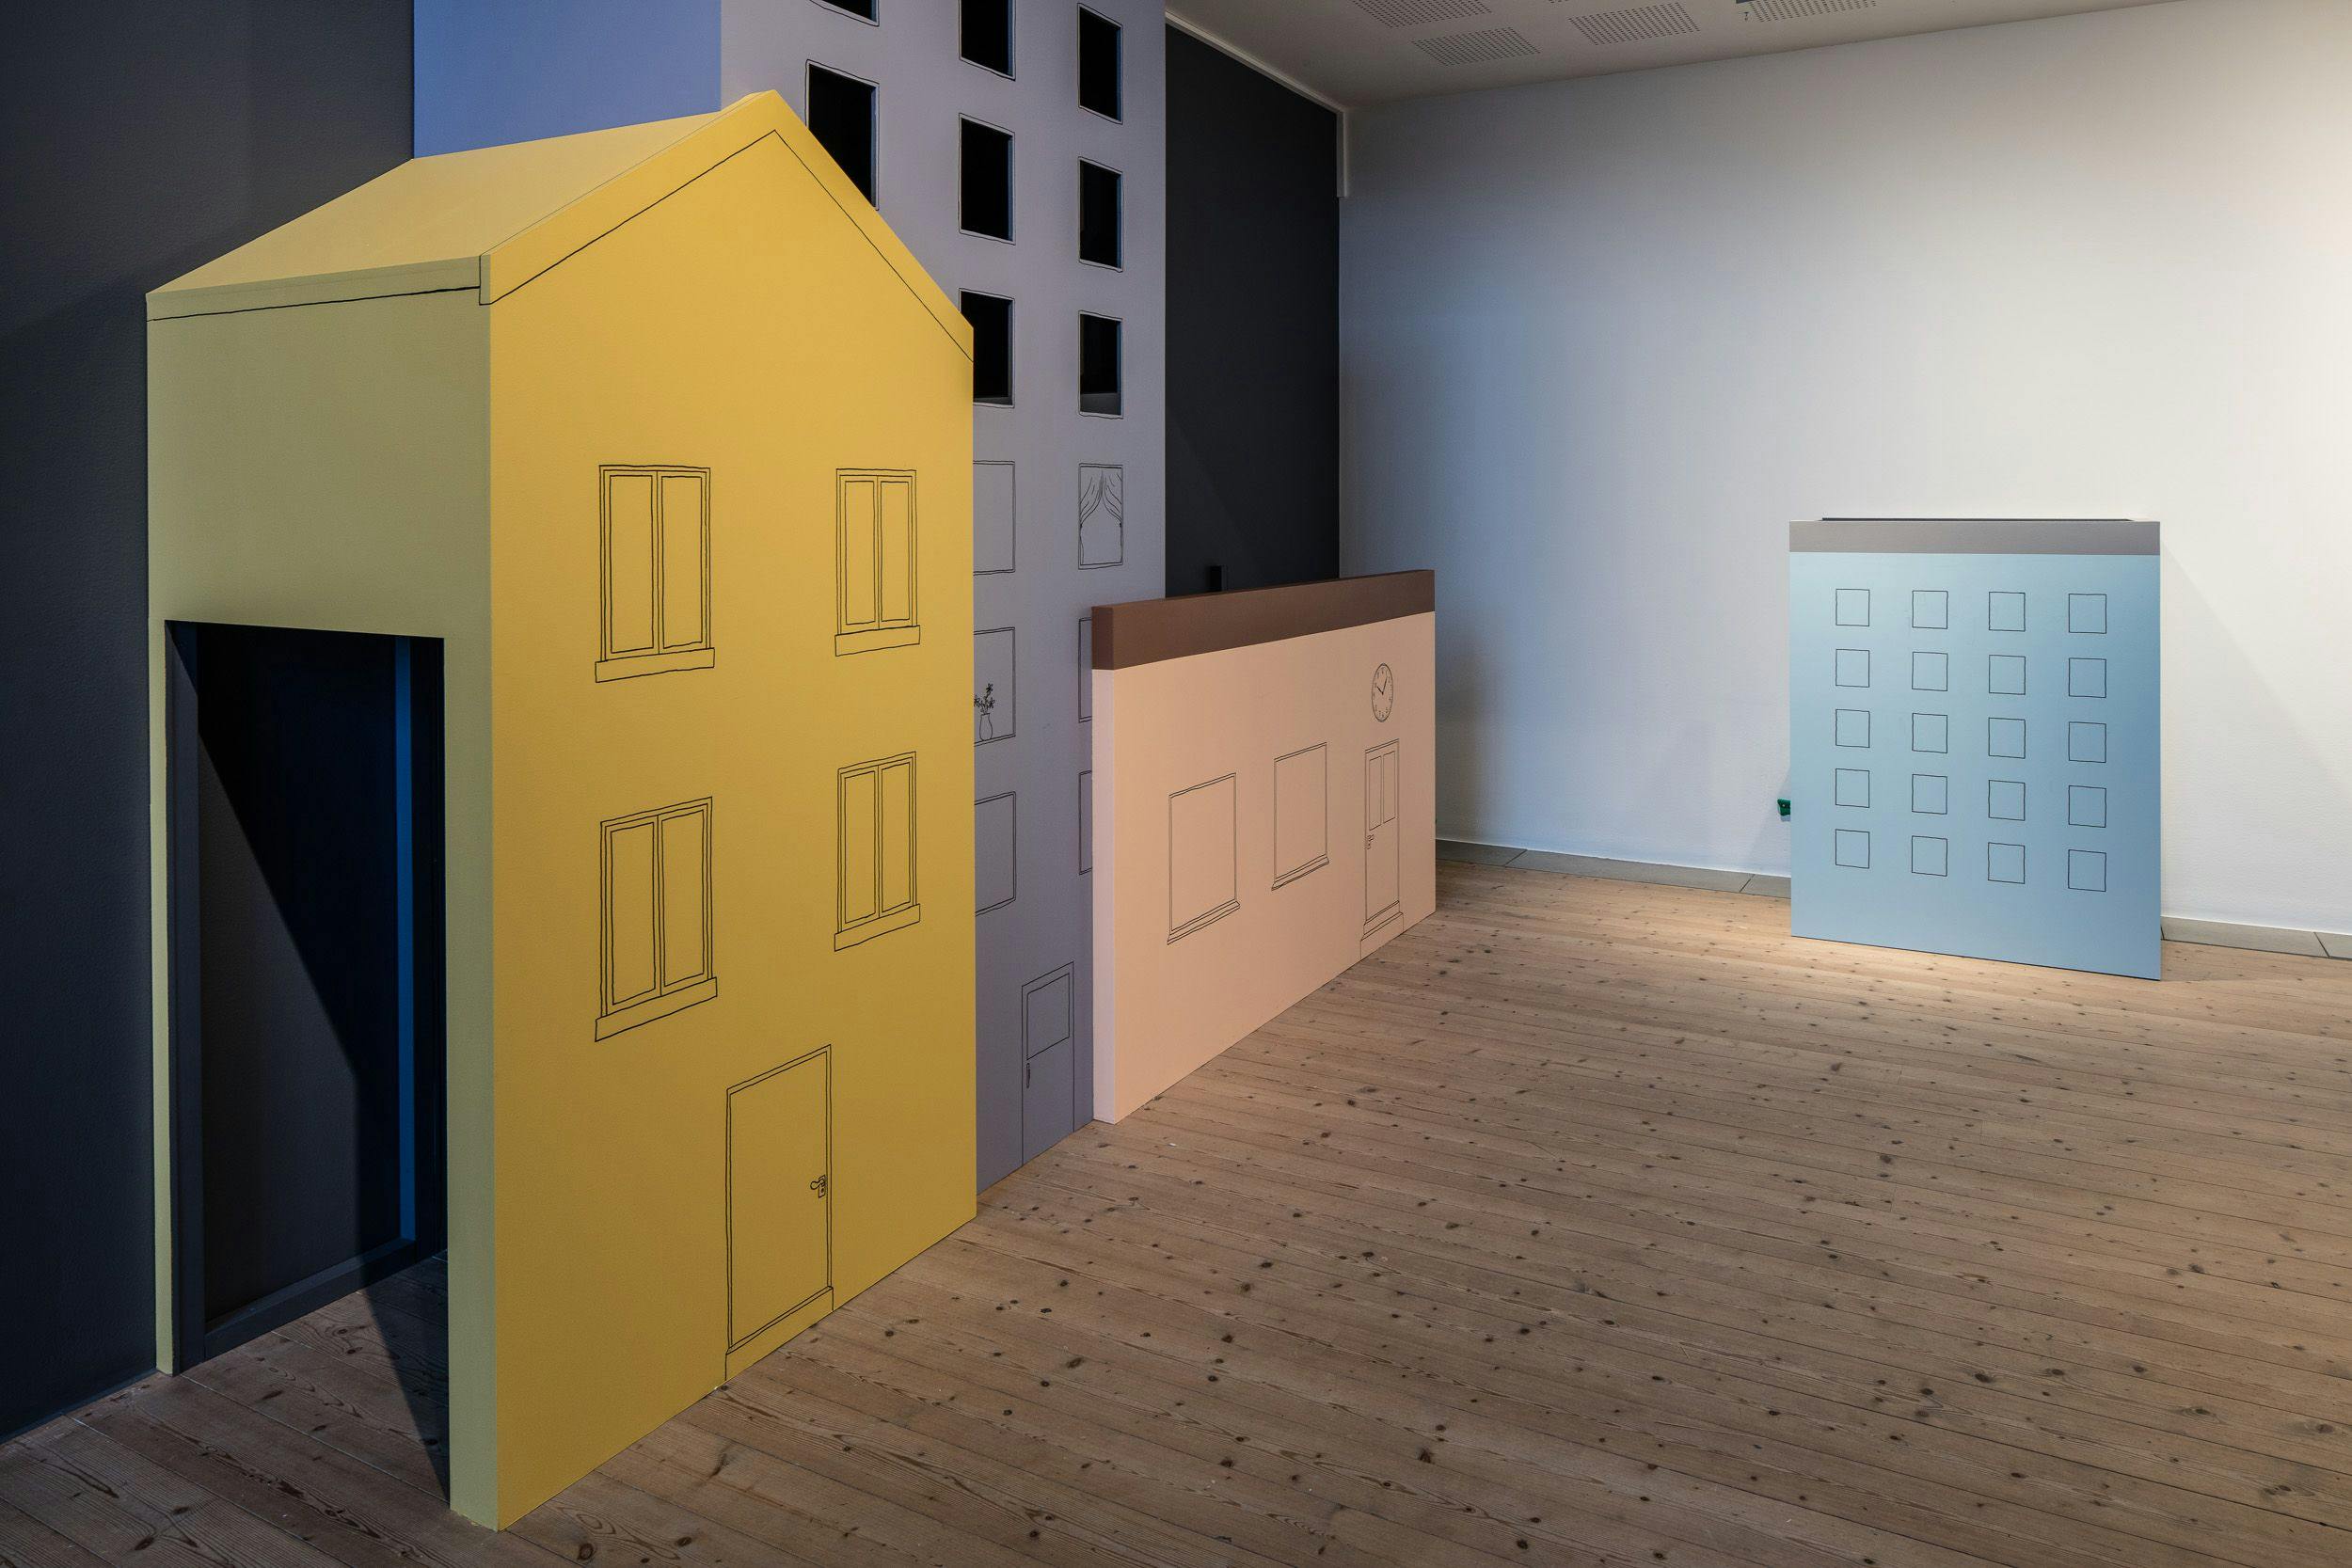 Bild från utställningen på museet 2018. Konstruktion av mindre höghus, med öppningar för barn att klättra in i.